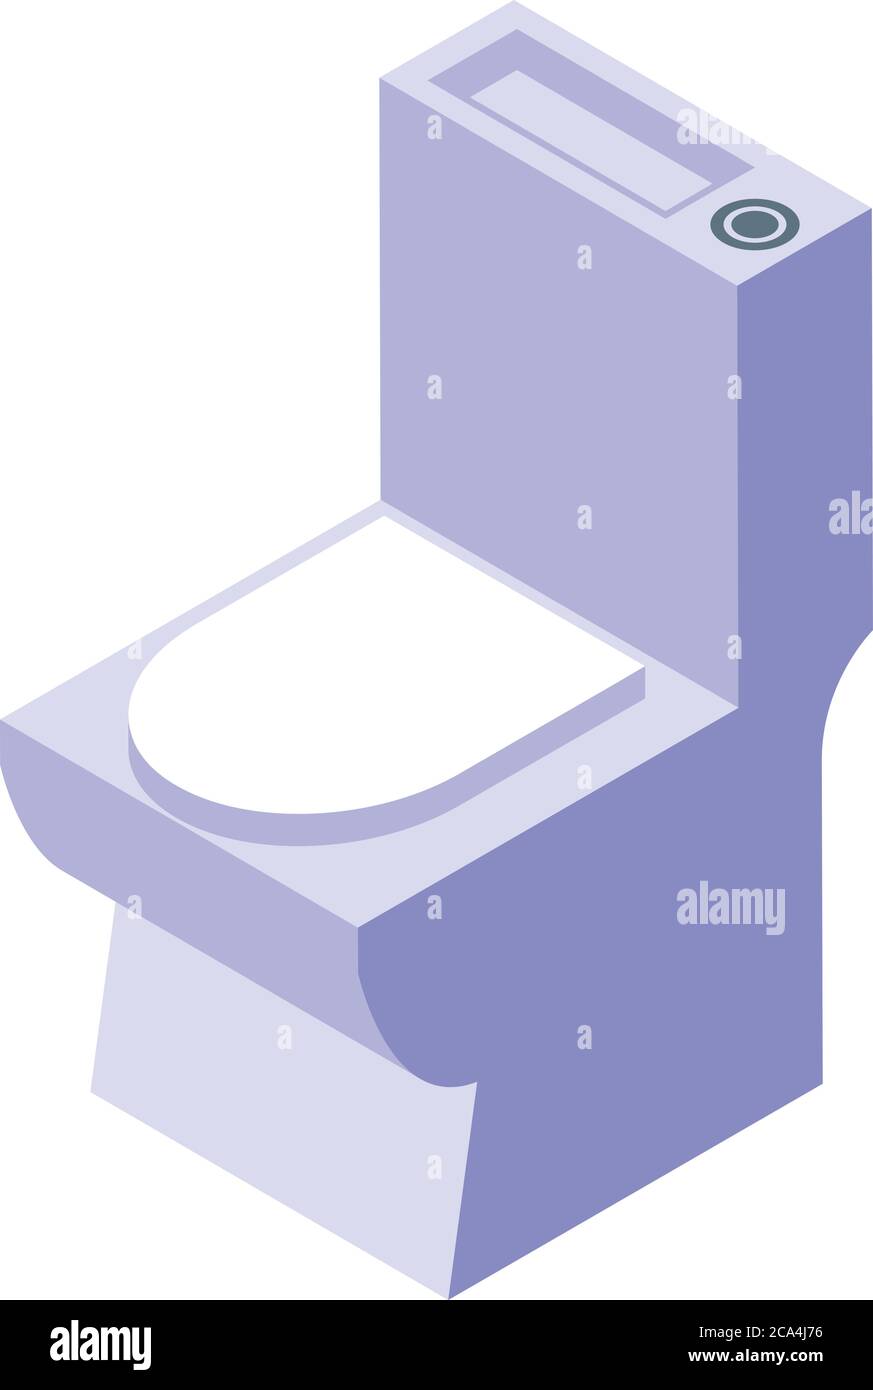 Toilet icon, isometric style Stock Vector